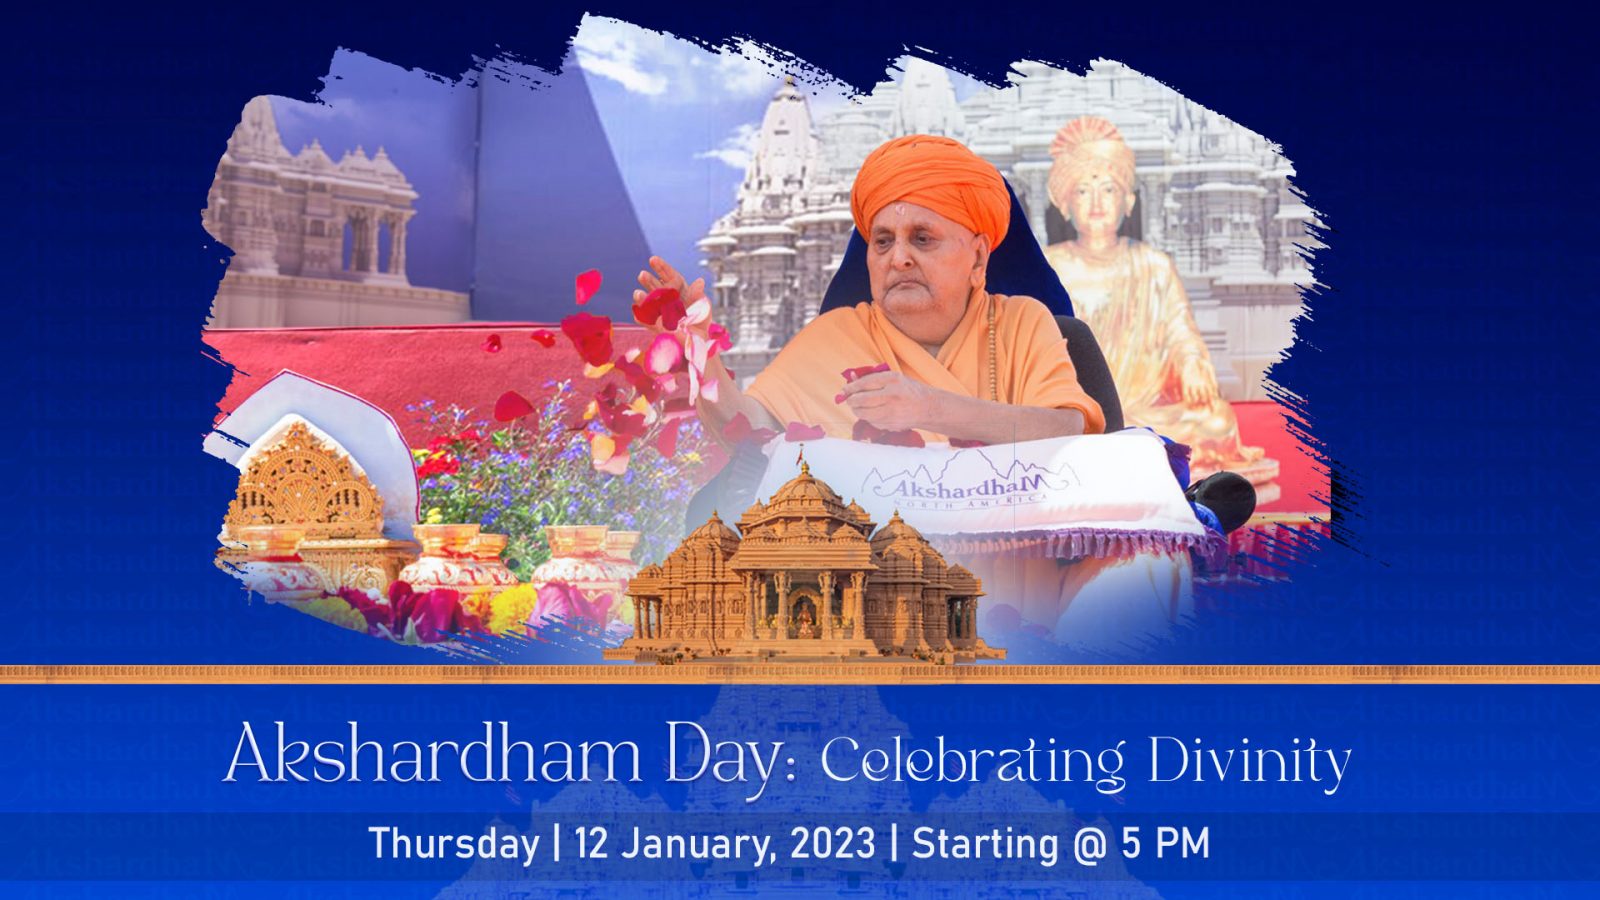 Akshardham Day: Celebrating Divinity